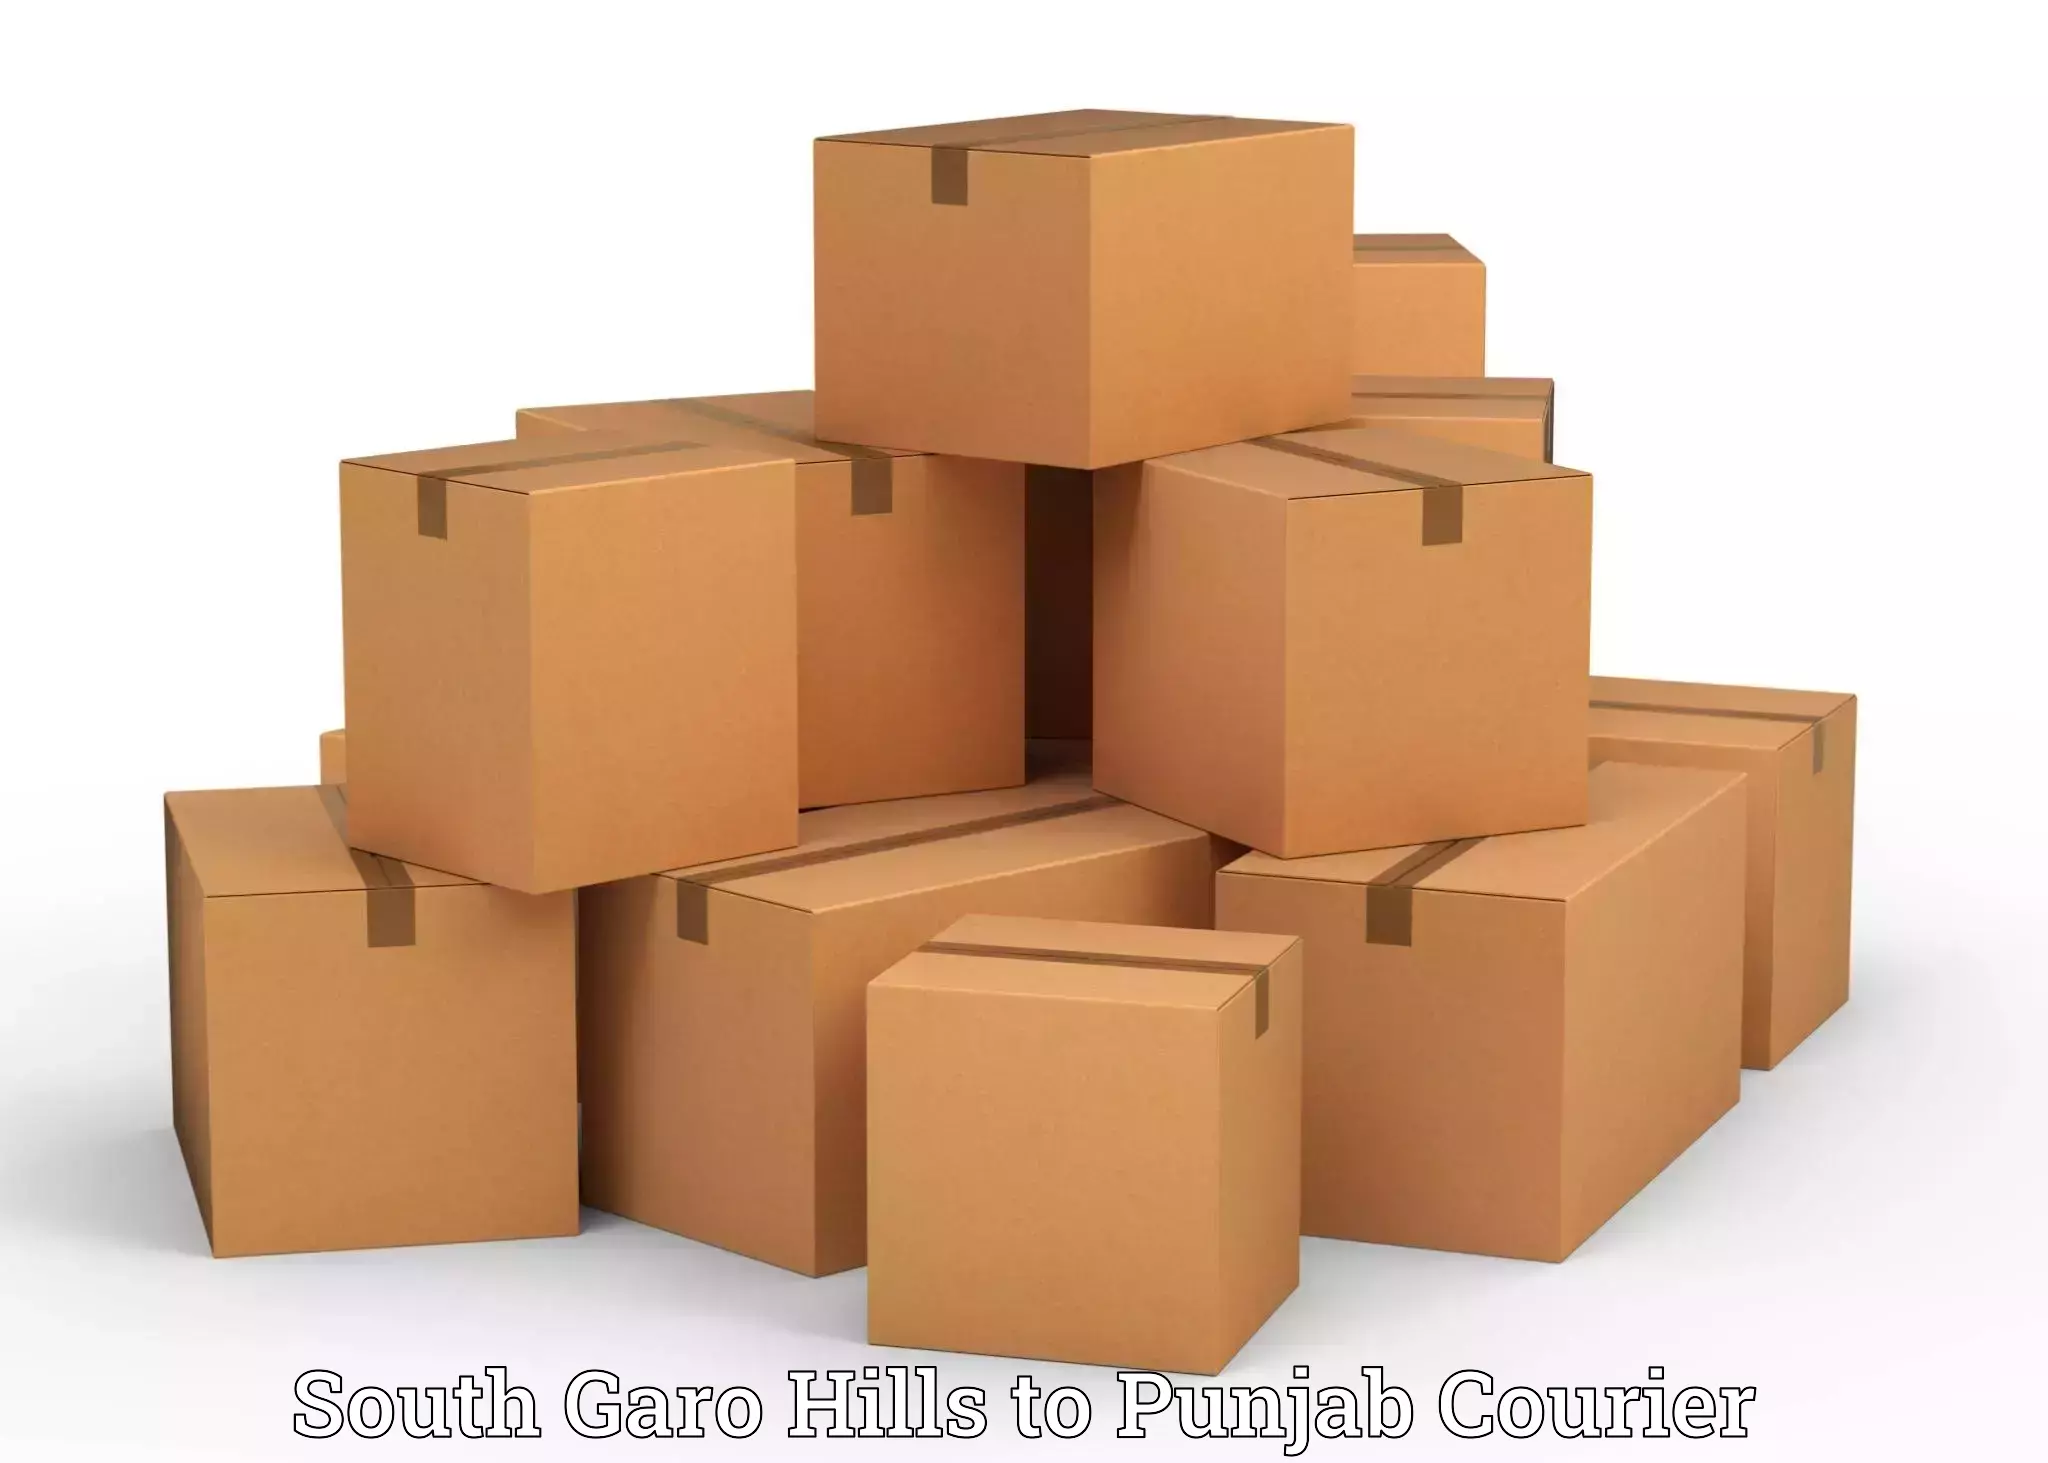 Quality furniture shipping South Garo Hills to Punjab